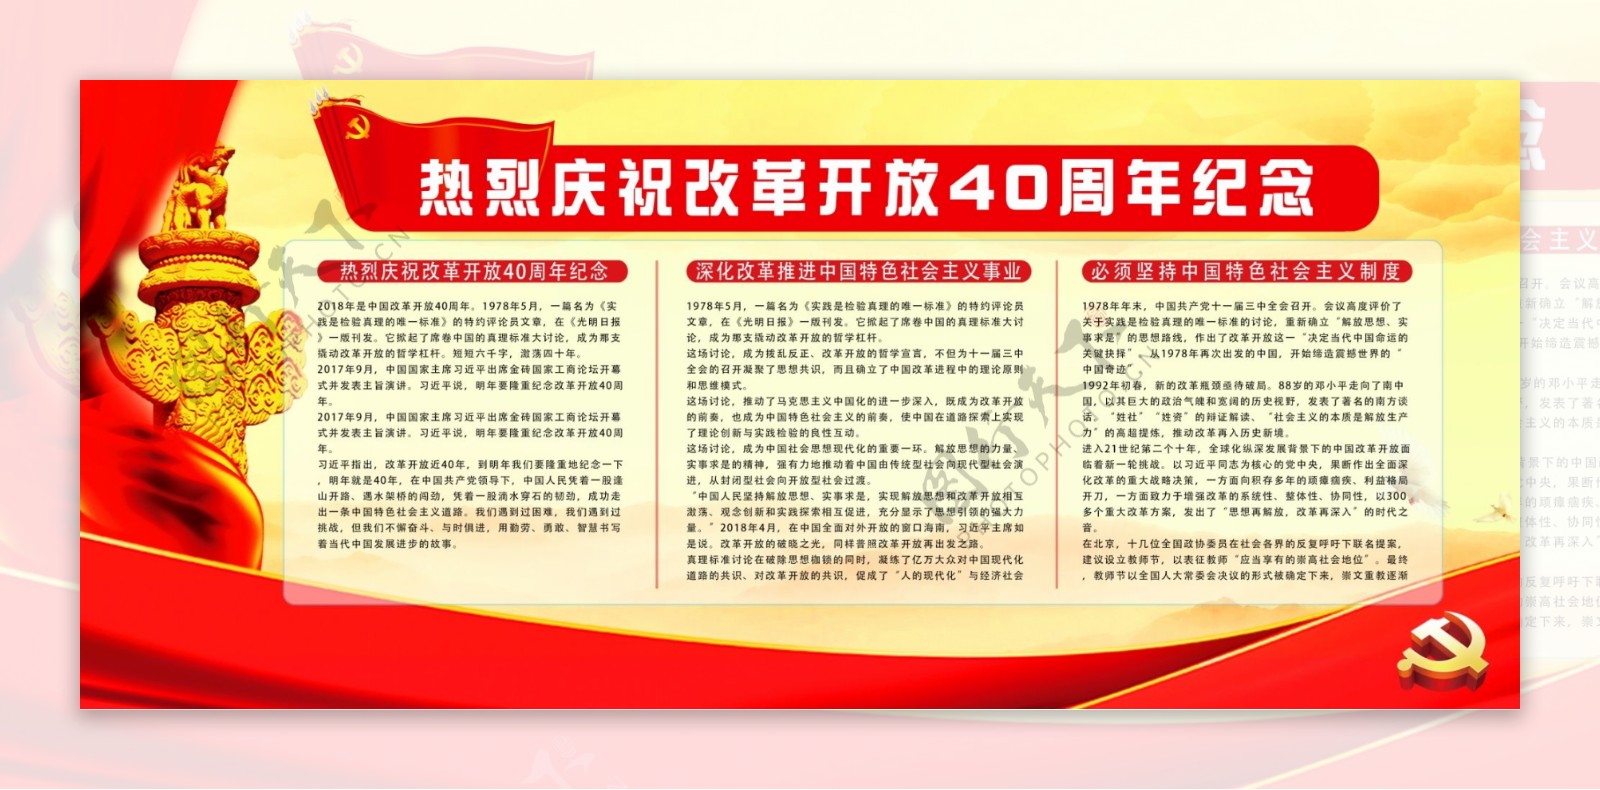 简约大气红色党建风改革开放40周年纪念展板